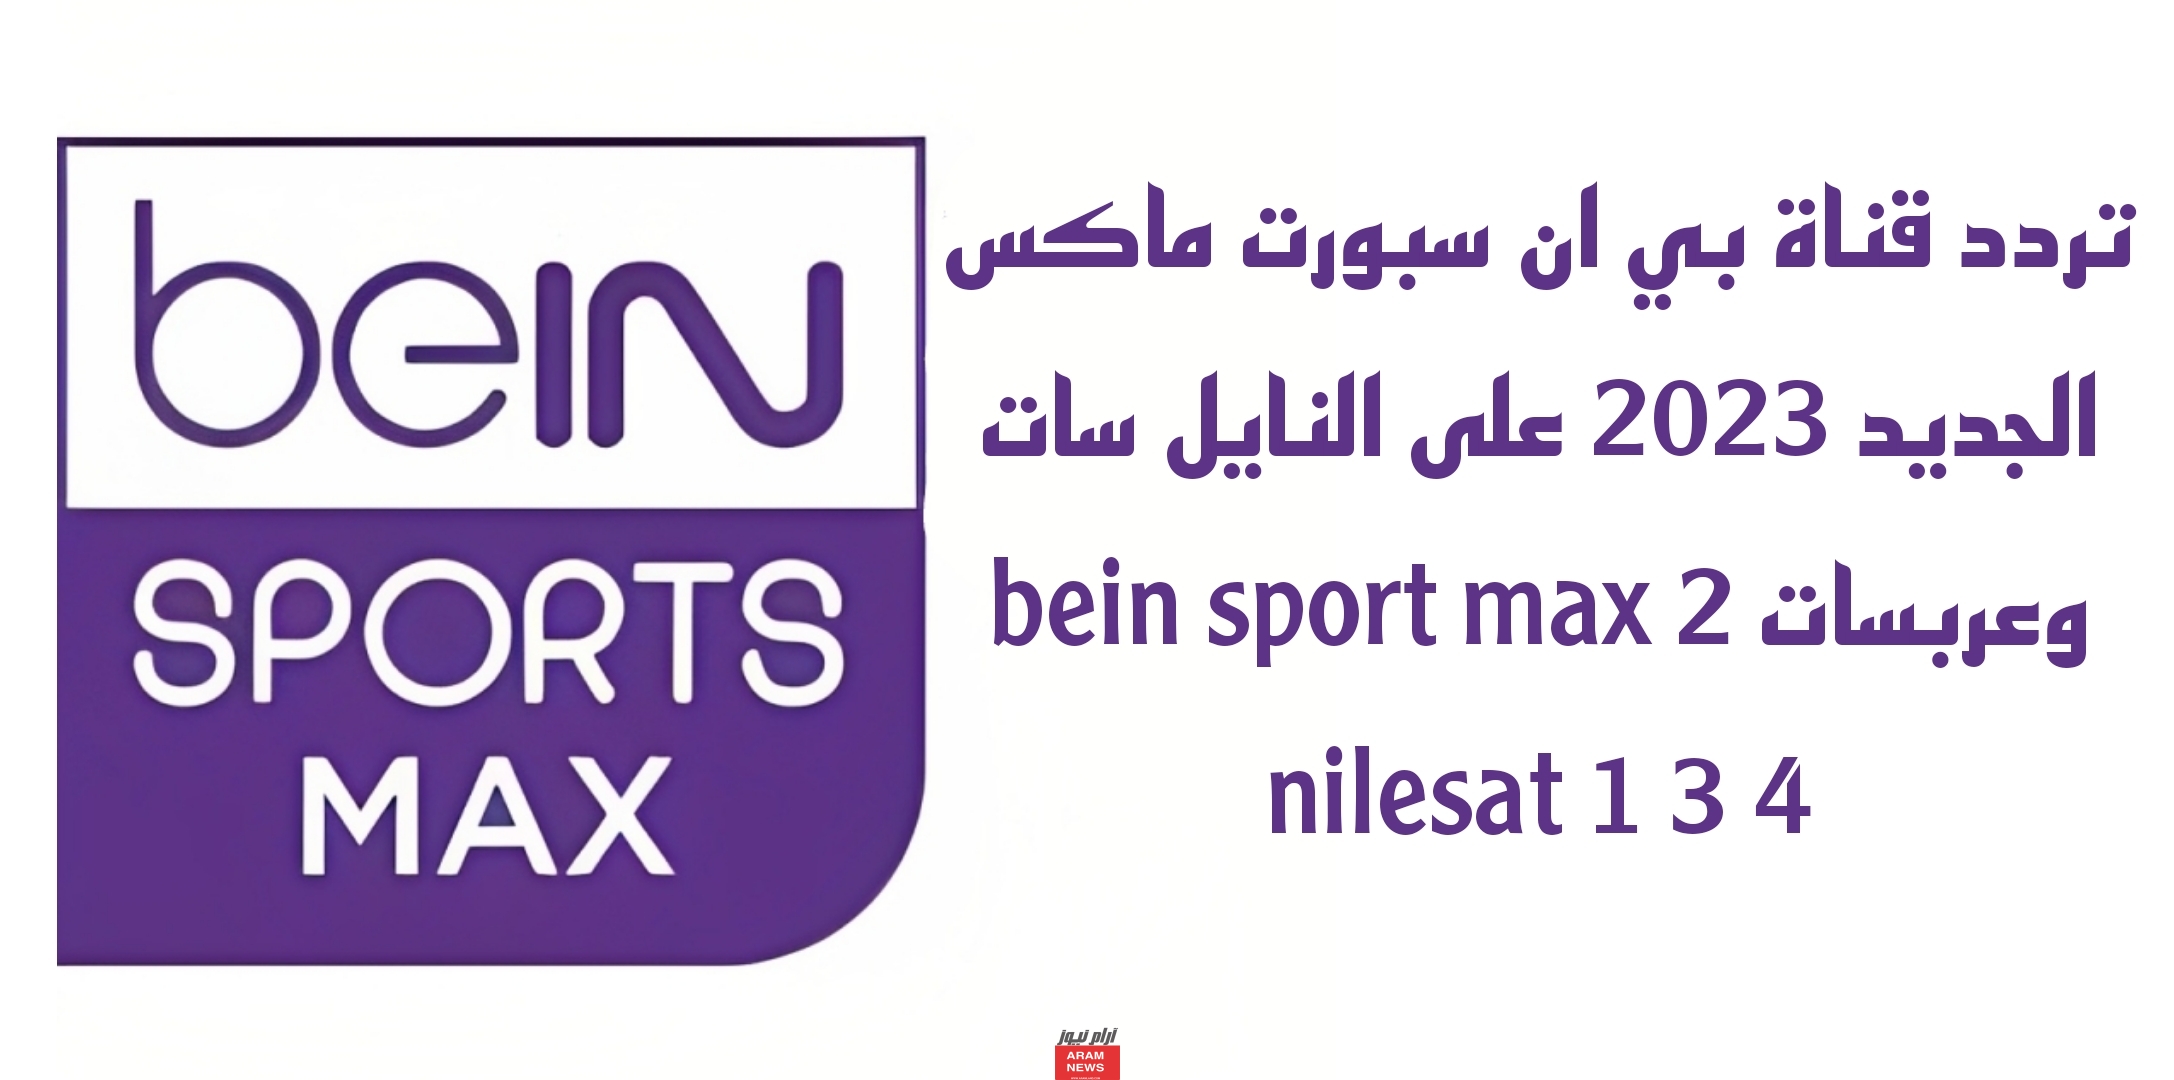 تردد قناة بي ان سبورت ماكس الجديد على النايل سات وعربسات bein sport max 2 nilesat 1 3 4